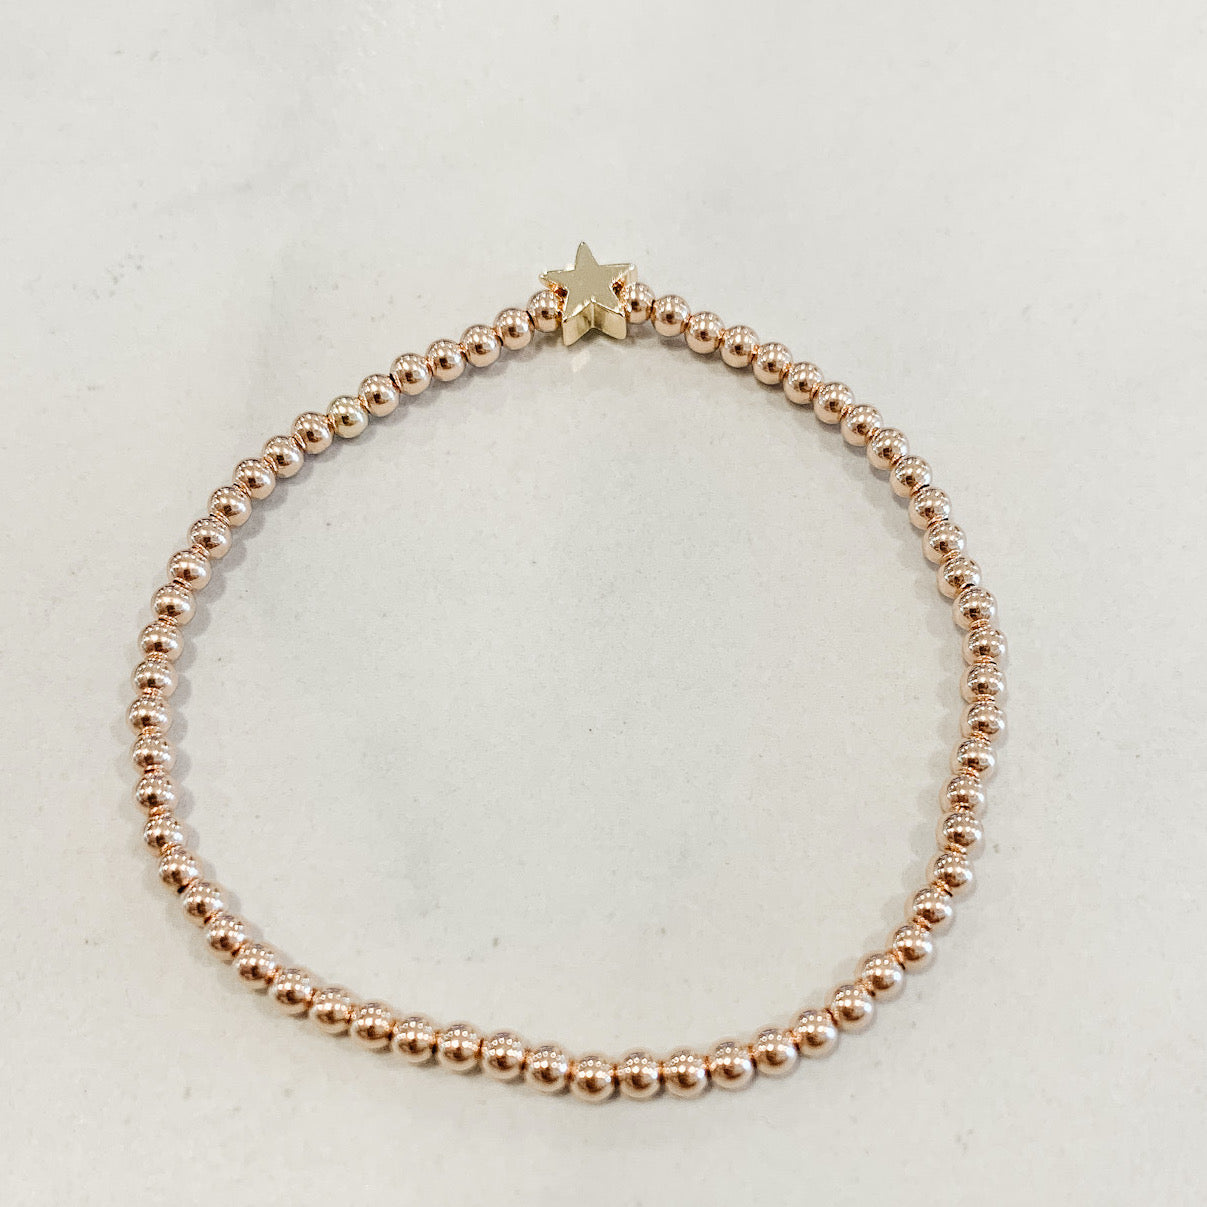 Children's Classic Rose Gold Beaded Bracelet - Gold Star